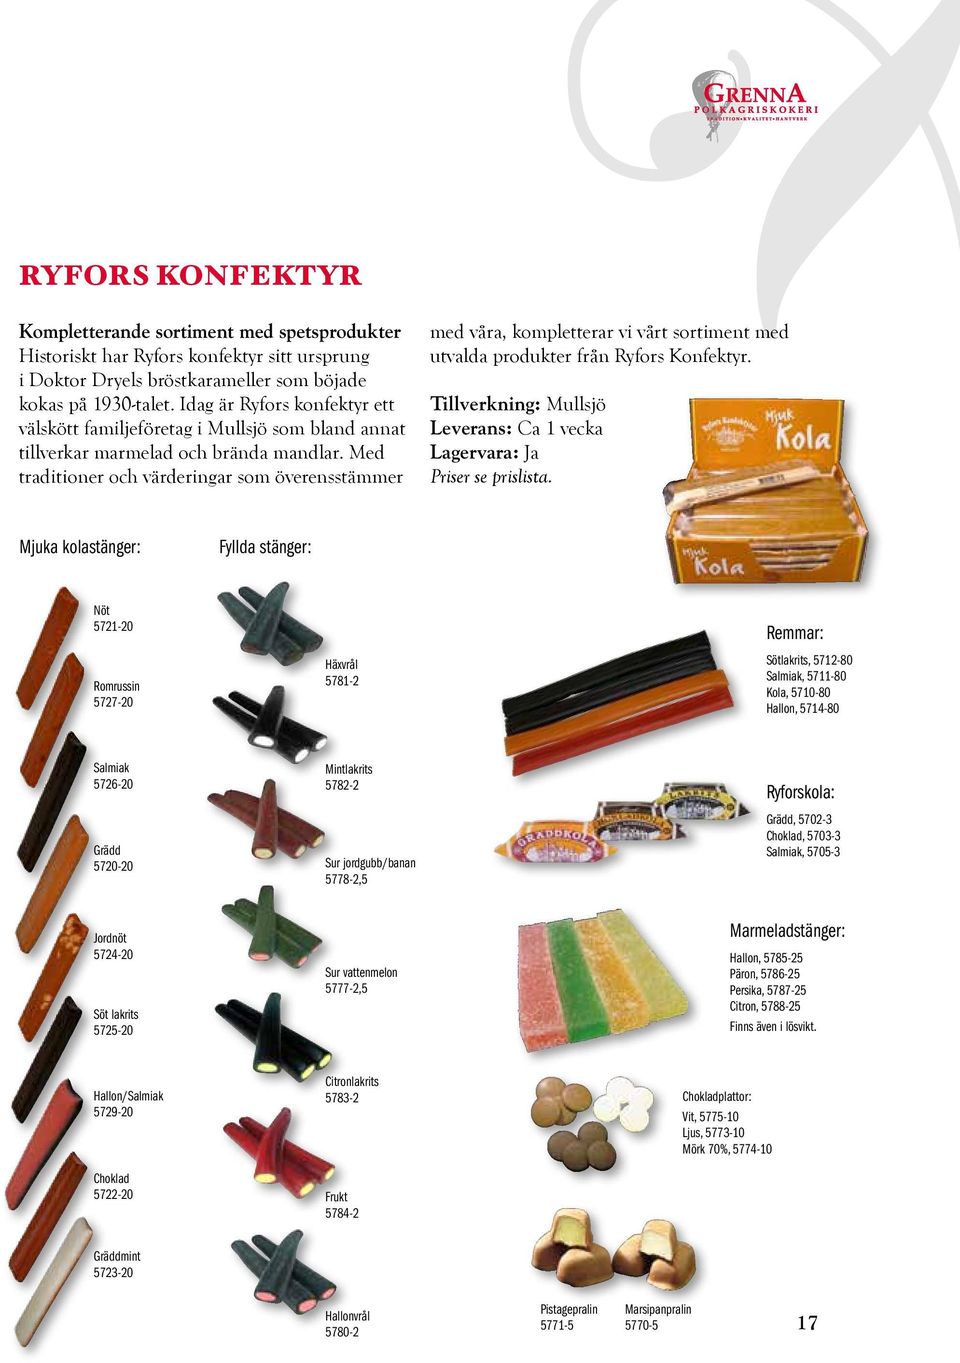 Med traditioner och värderingar som överensstämmer g med våra, kompletterar vi vårt sortiment med utvalda produkter från Ryfors Konfektyr.